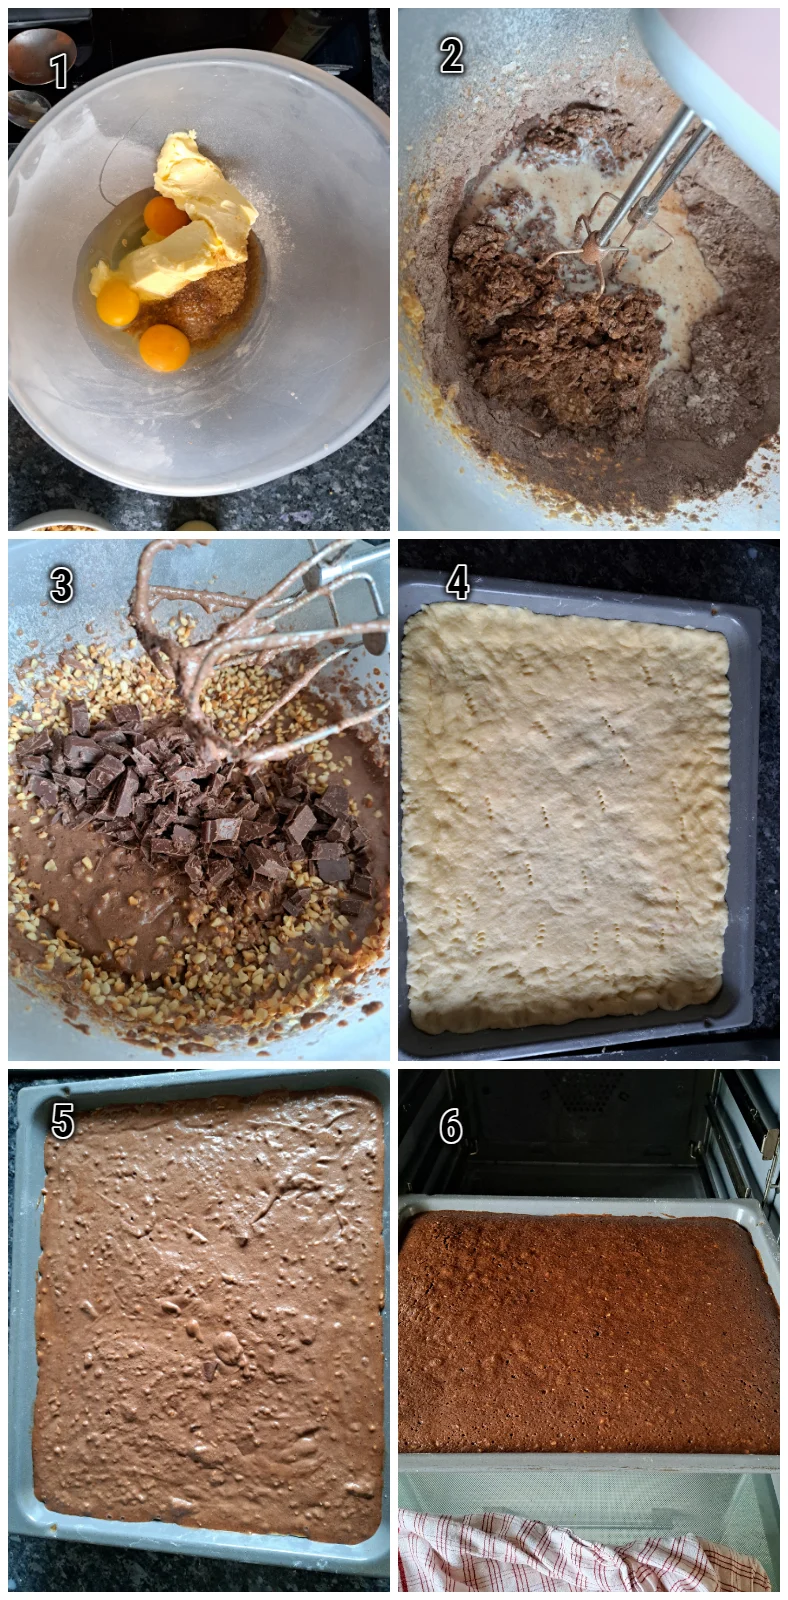 Ein Bild dokumentiert den Herstellungsprozess des Schokoteiges und das Befüllen des vorgebackenen Mürbteigbodens, um einen Gewürzkuchen wie vom Bäcker herzustellen.